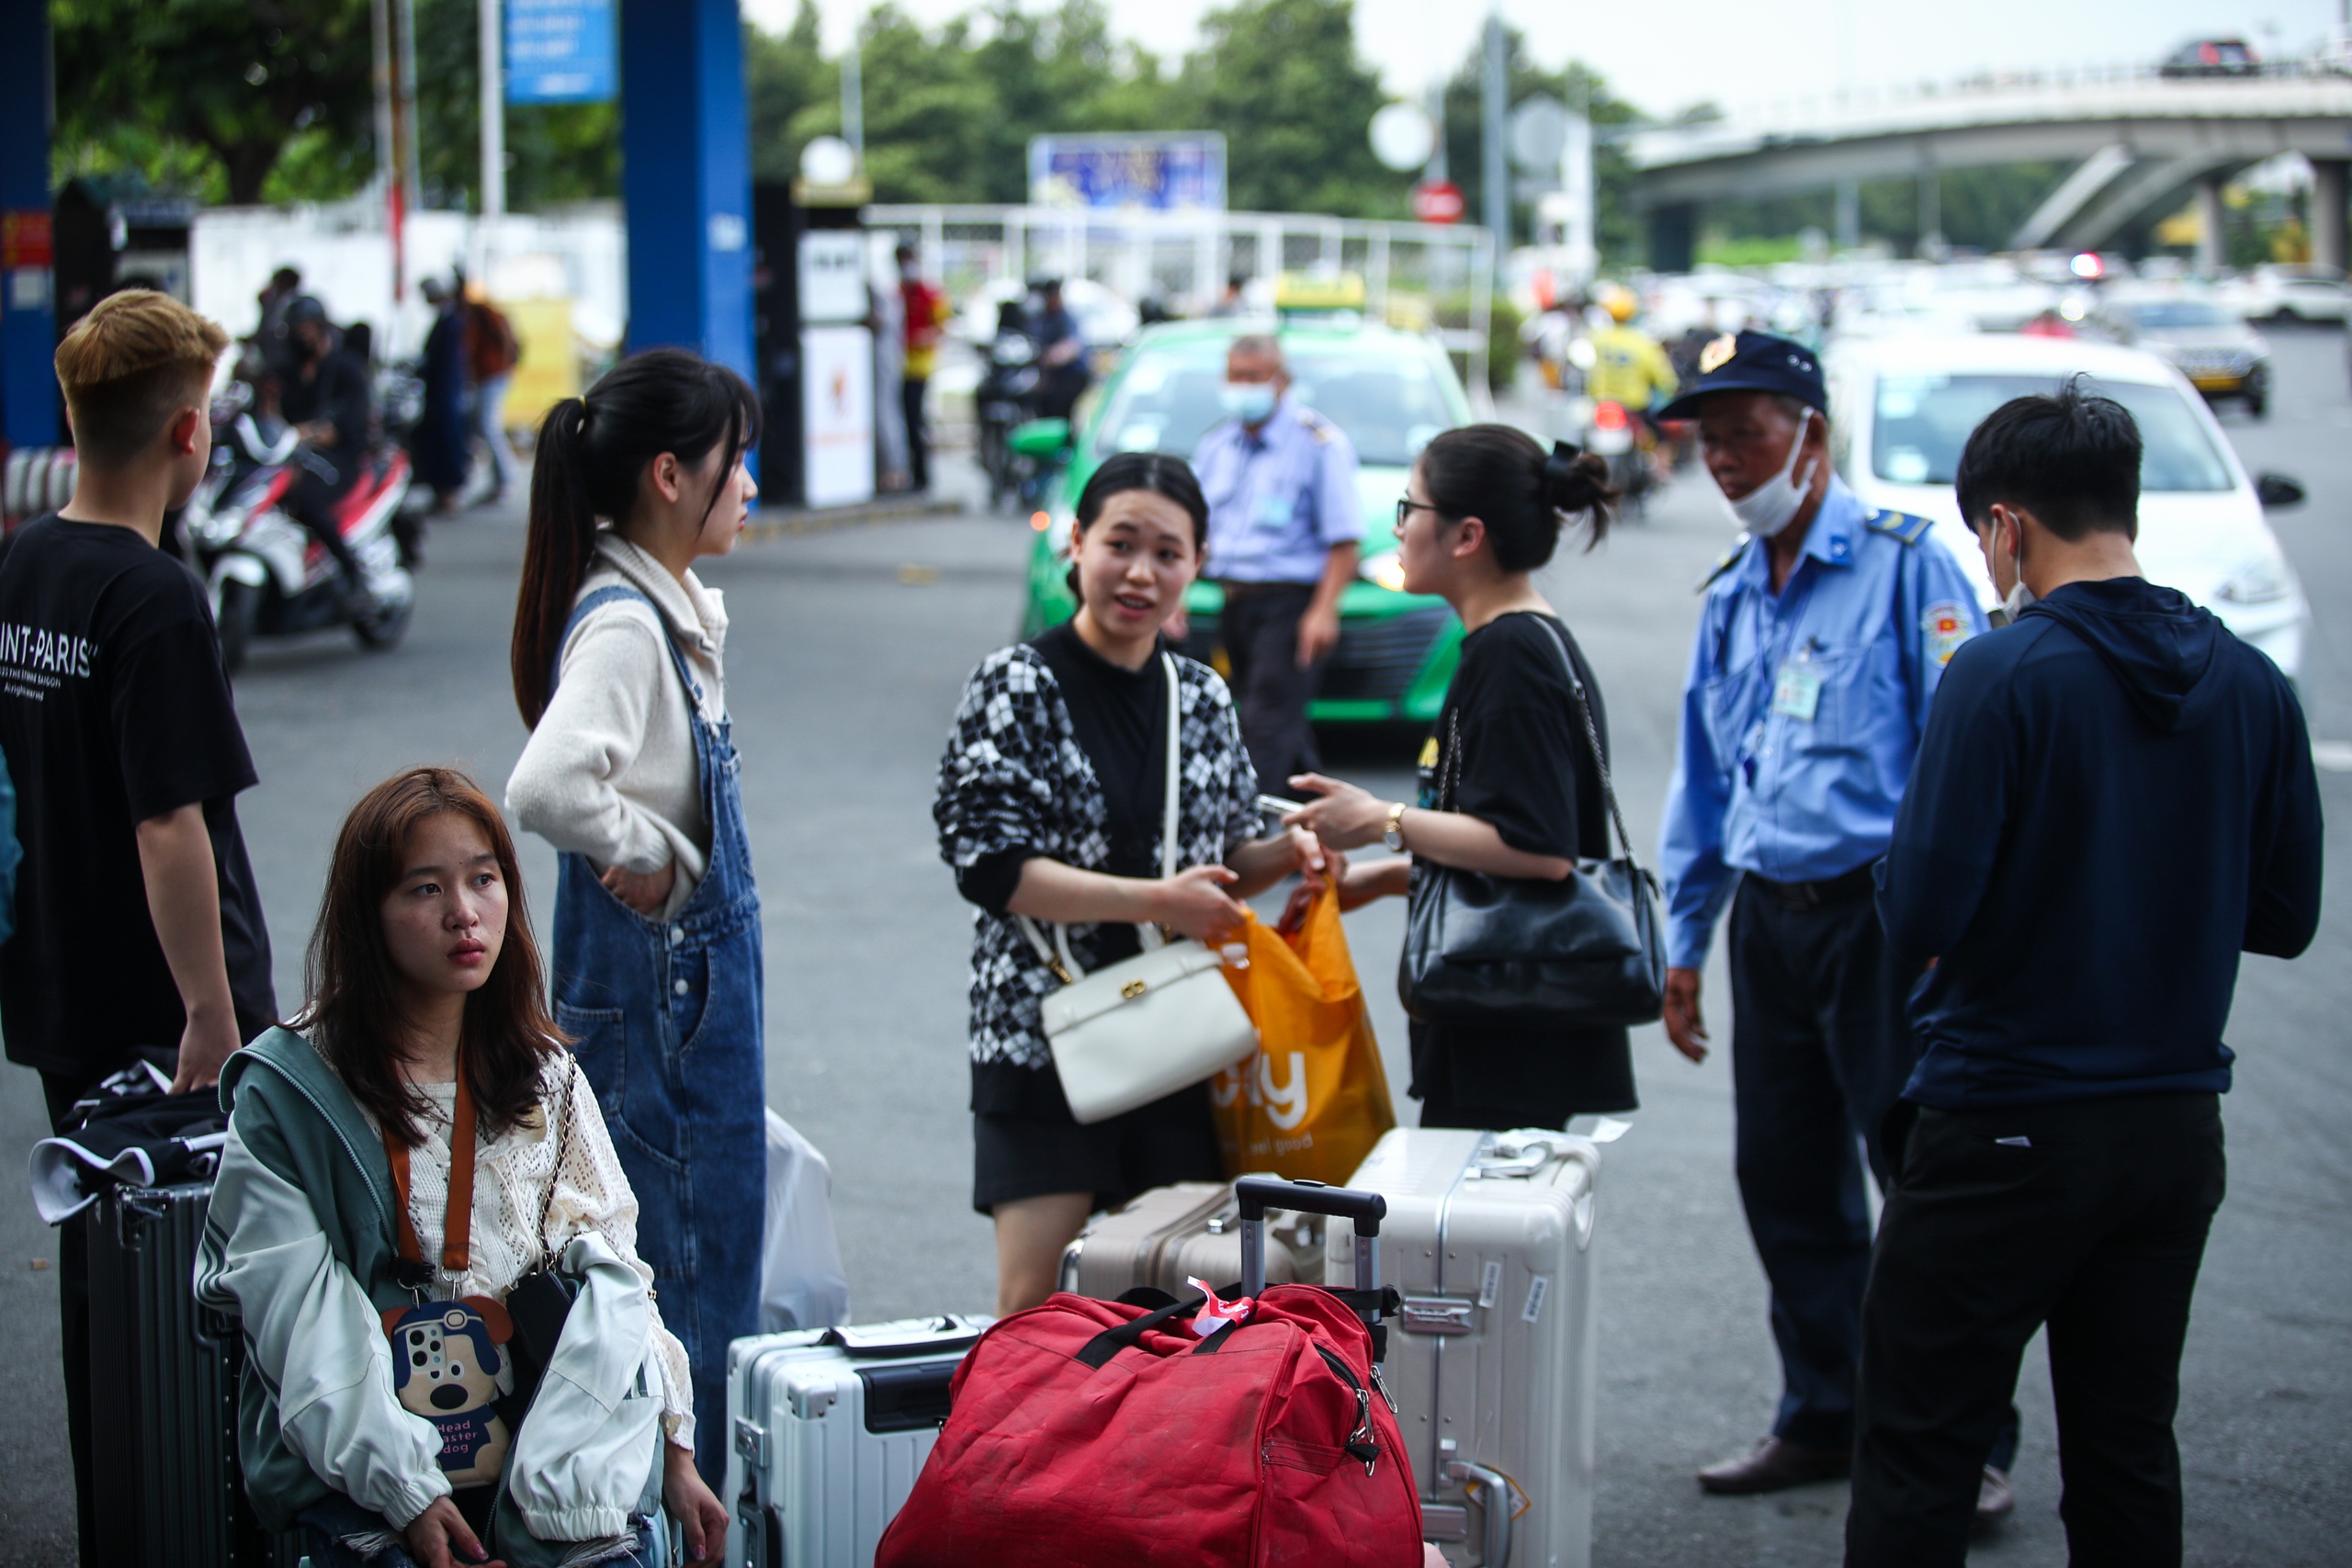 26 tháng chạp: Cửa ngõ sân bay Tân Sơn Nhất đông nghẹt xe cộ, có lúc kẹt cứng- Ảnh 7.